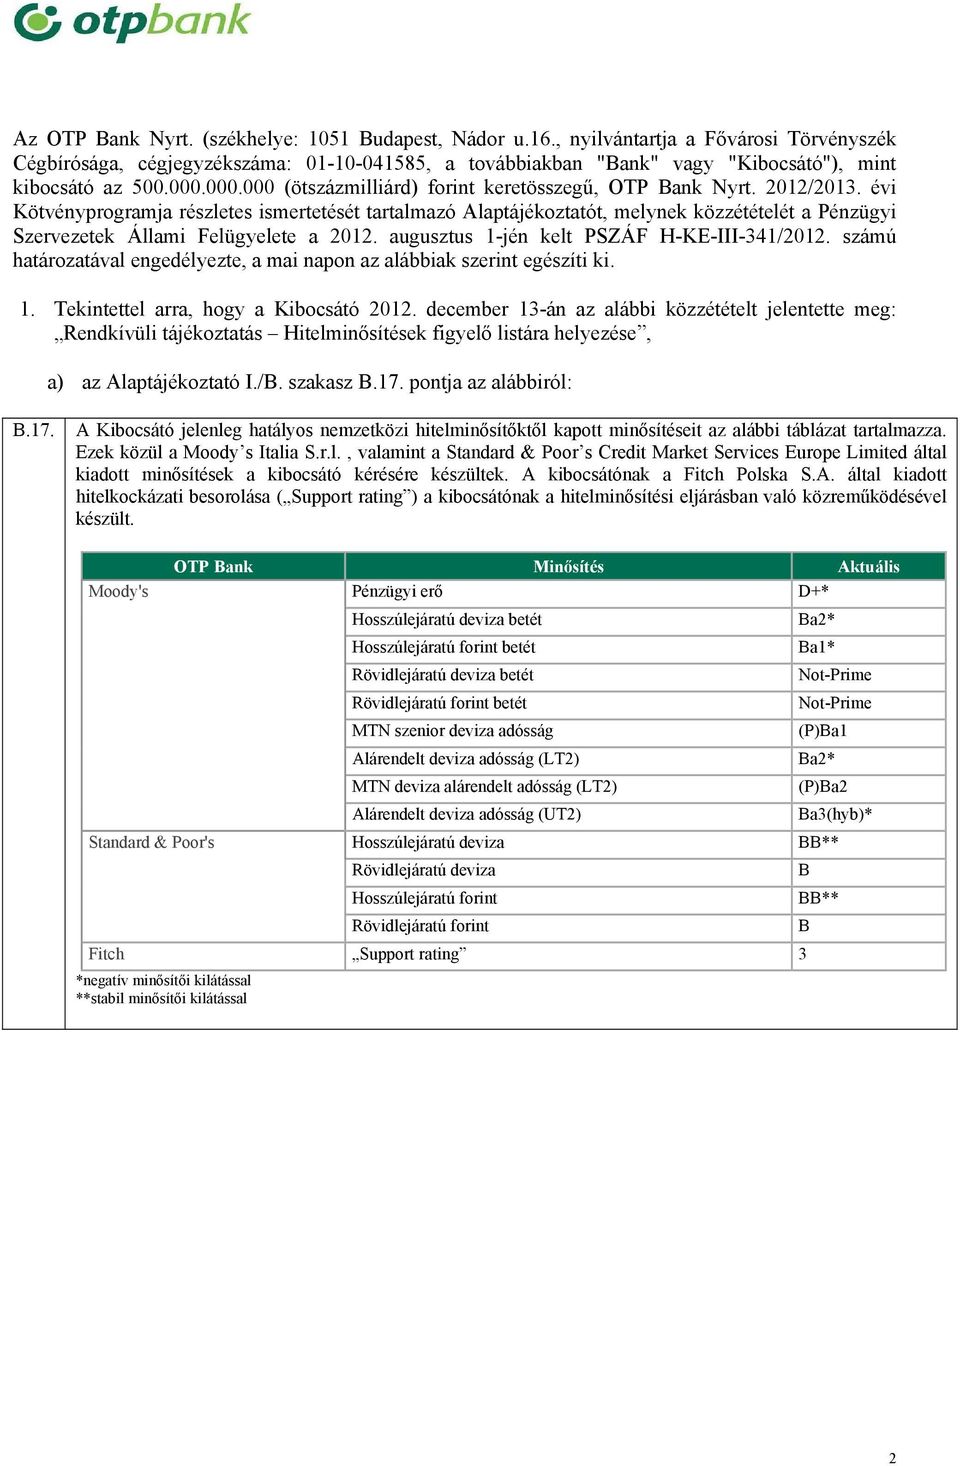 évi Kötvényprogramja részletes ismertetését tartalmazó Alaptájékoztatót, melynek közzétételét a Pénzügyi Szervezetek Állami Felügyelete a 2012. augusztus 1-jén kelt PSZÁF H-KE-III-341/2012.